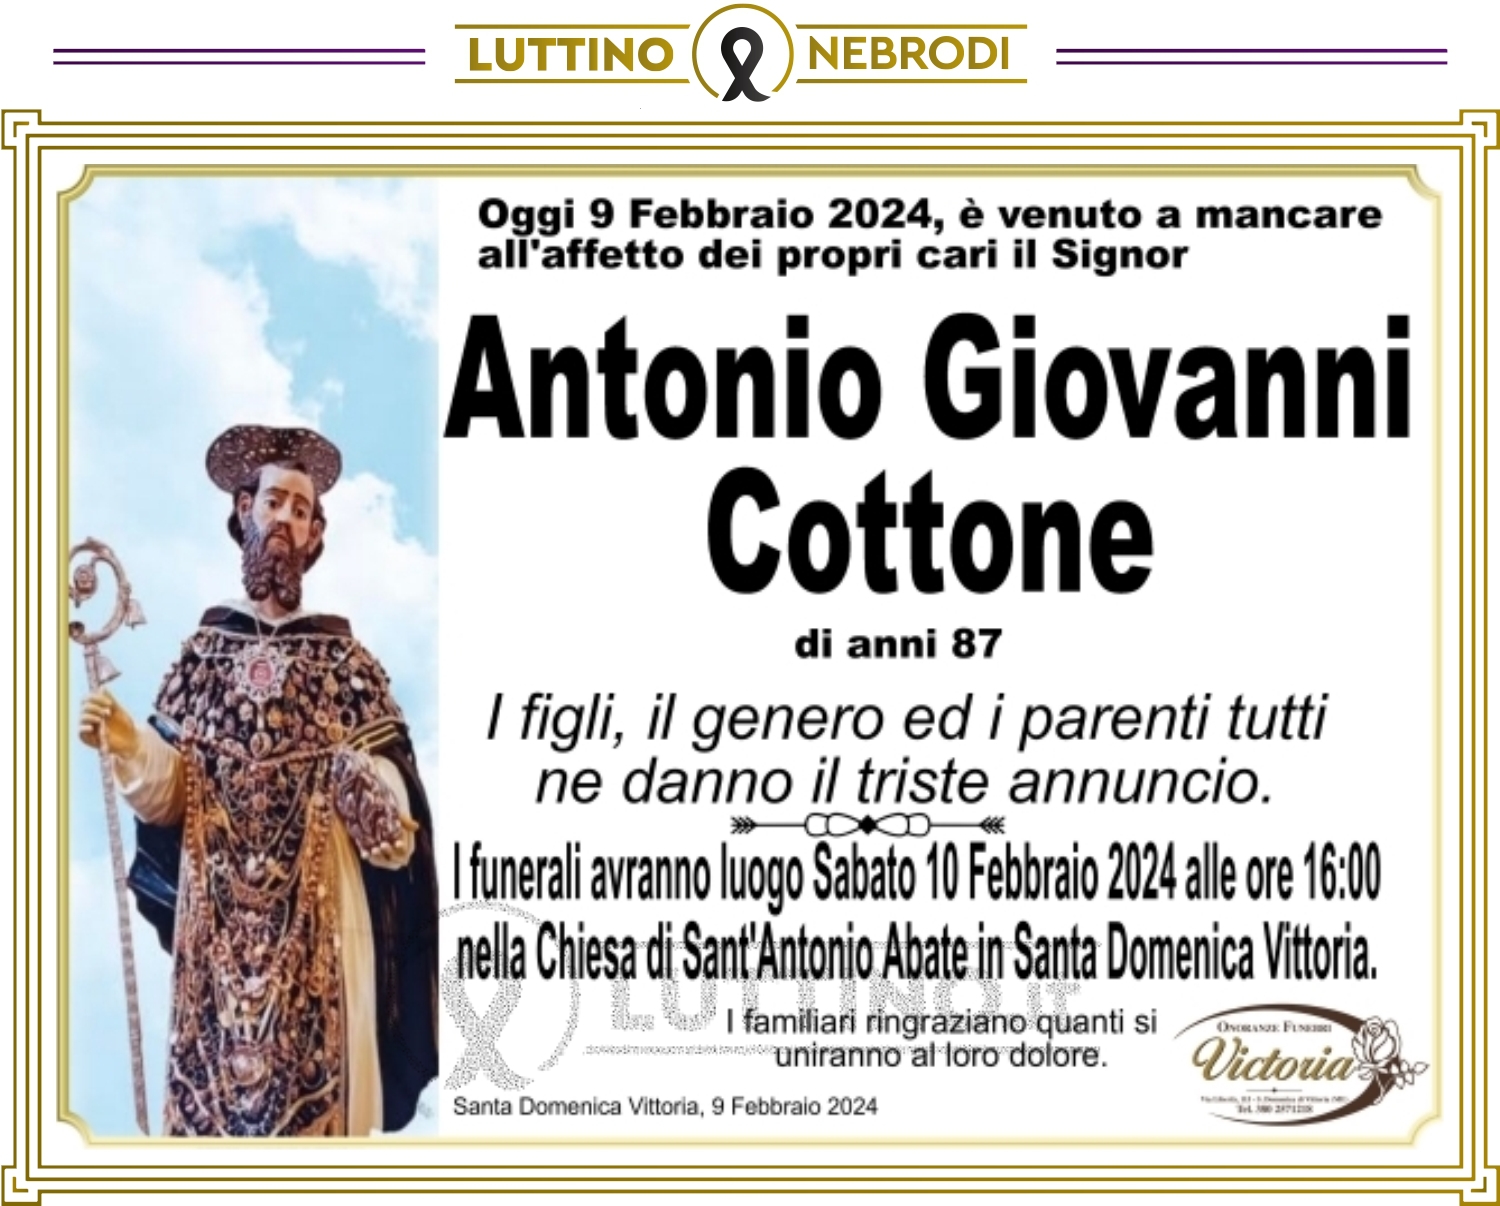 Antonio Giovanni Cottone